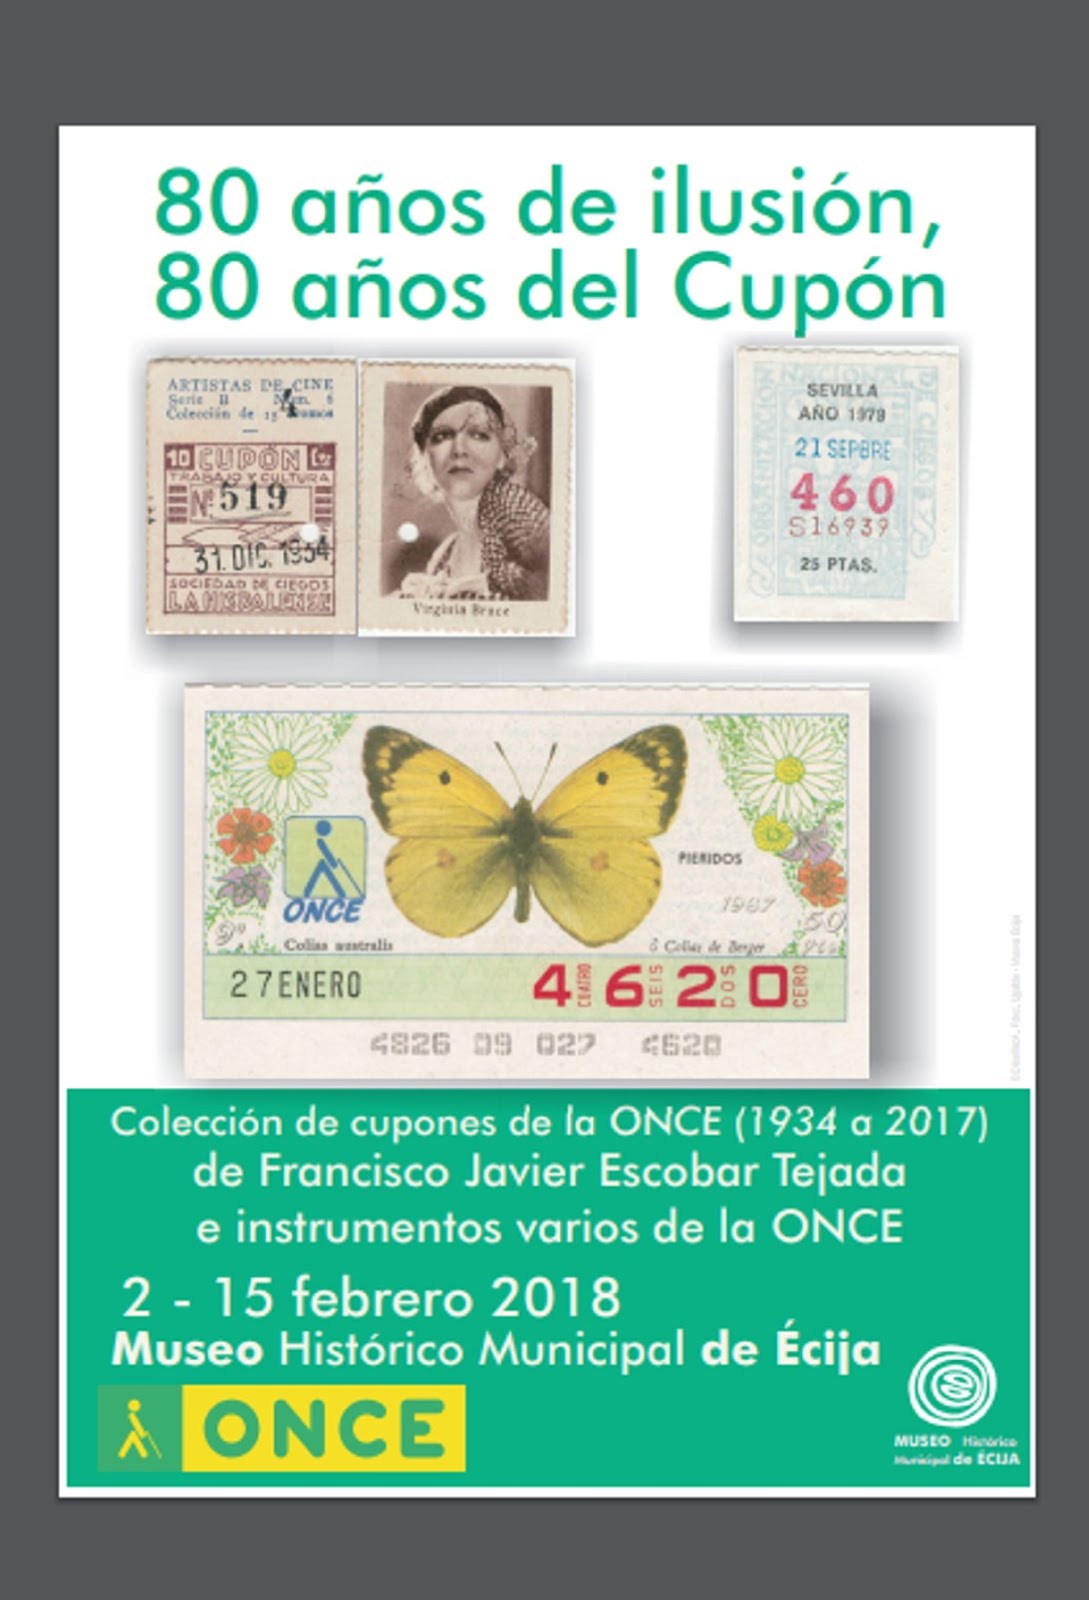 once.es: Exposición Cupones "80 Años de Ilusión, 80 Años del Cupón". Febrero '18 (Click en cartel)